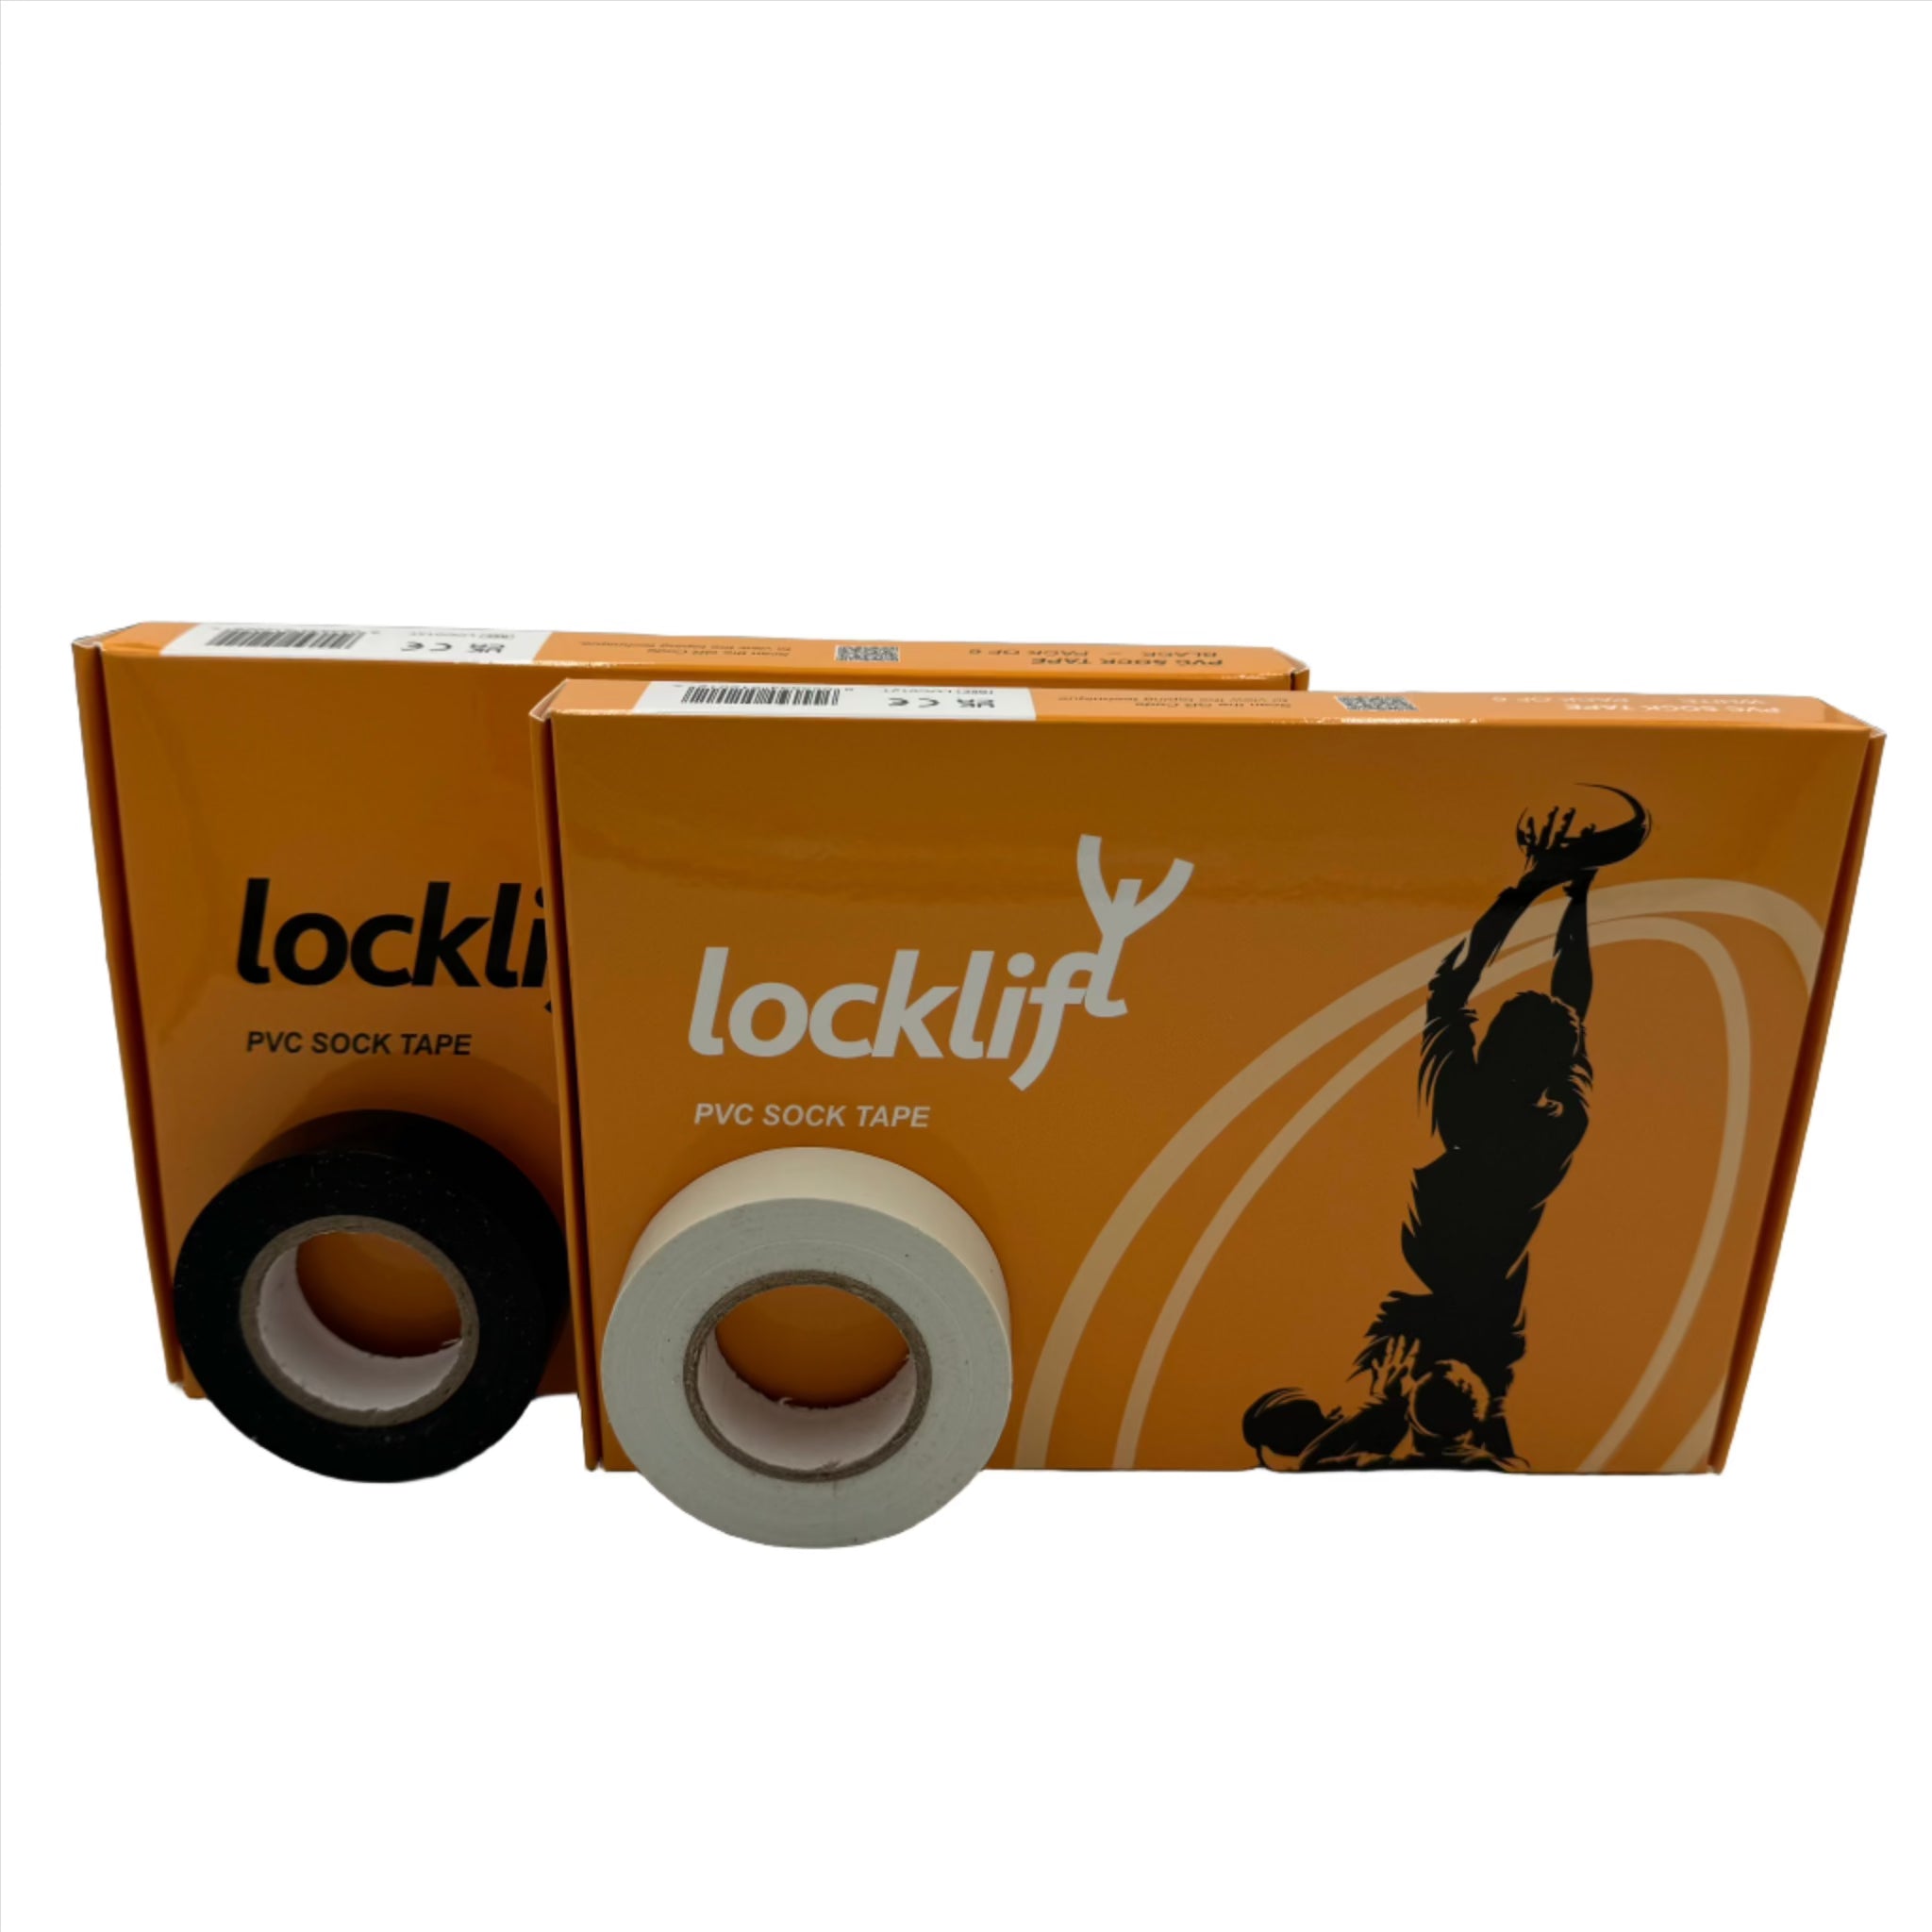 locklift sock tape - 6 rolls of locklift pvc sock tape